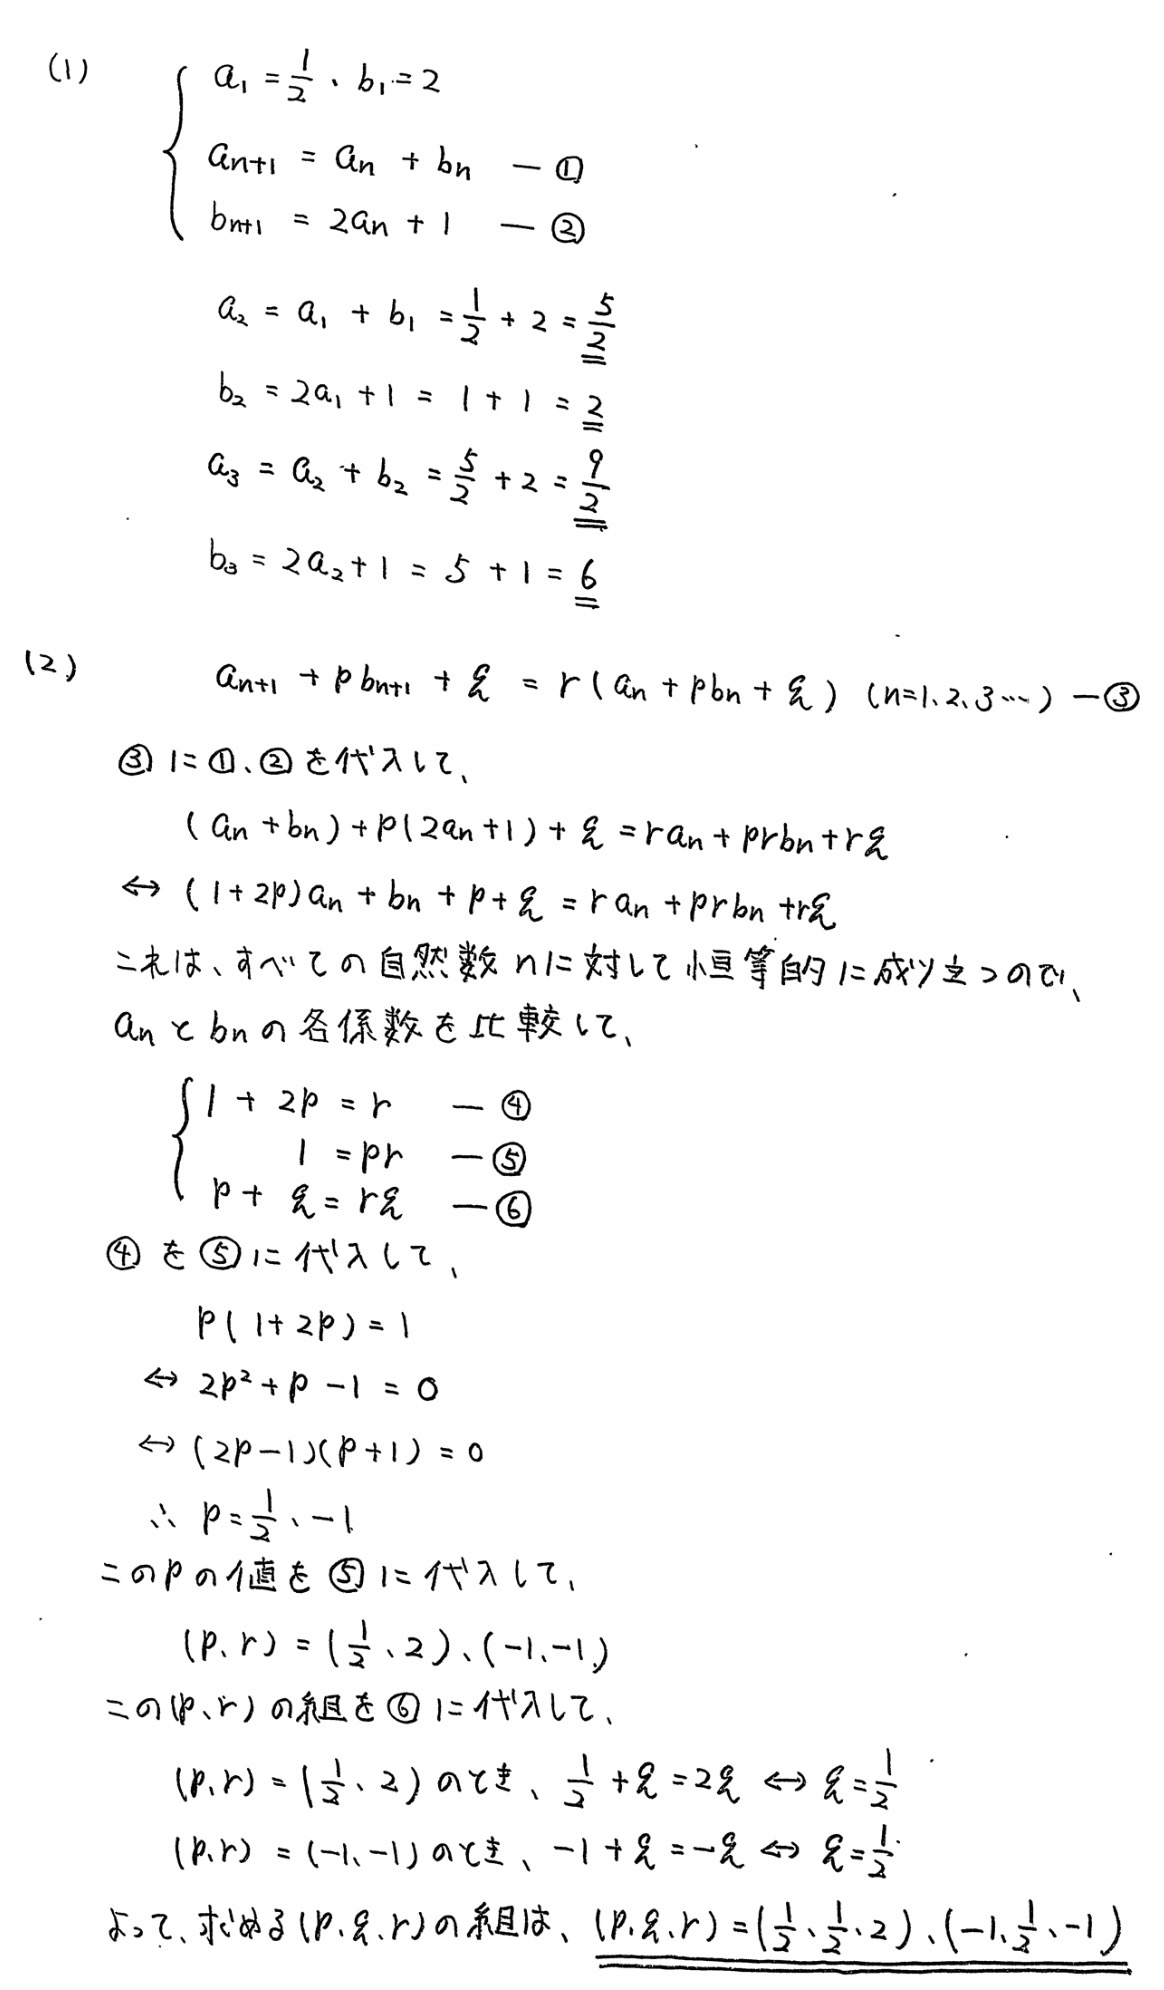 宮崎大学入試文系数学2022年(令和4年)過去問題(解答・解説)